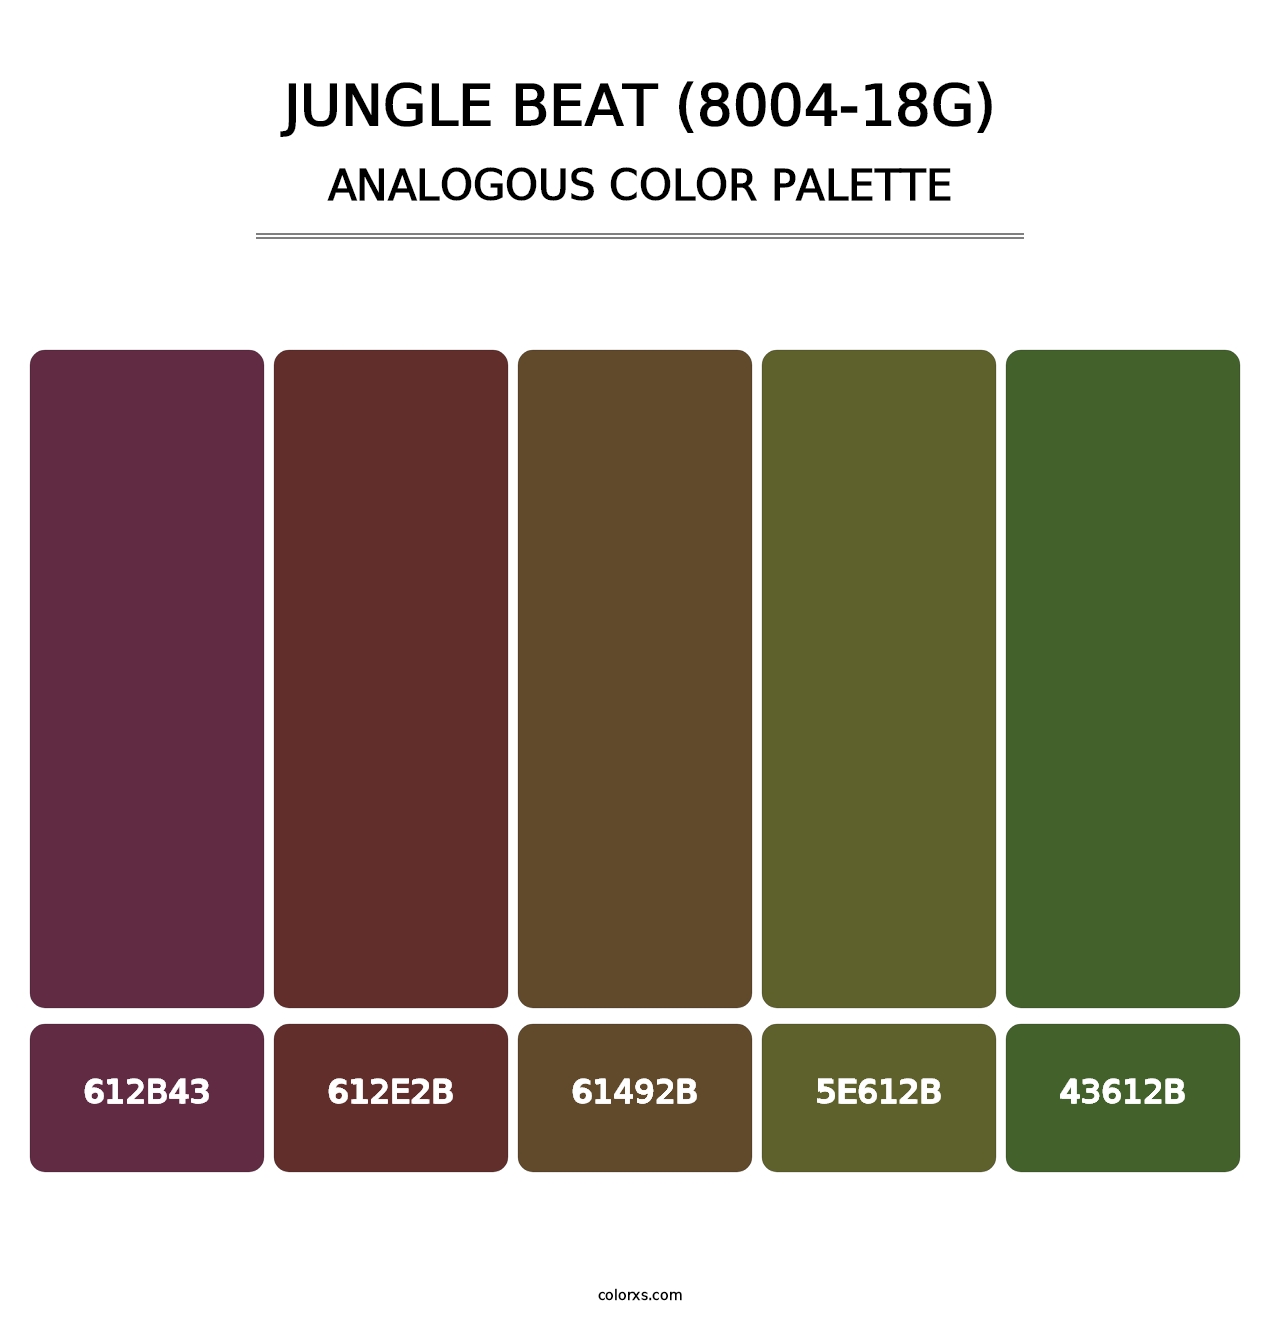 Jungle Beat (8004-18G) - Analogous Color Palette